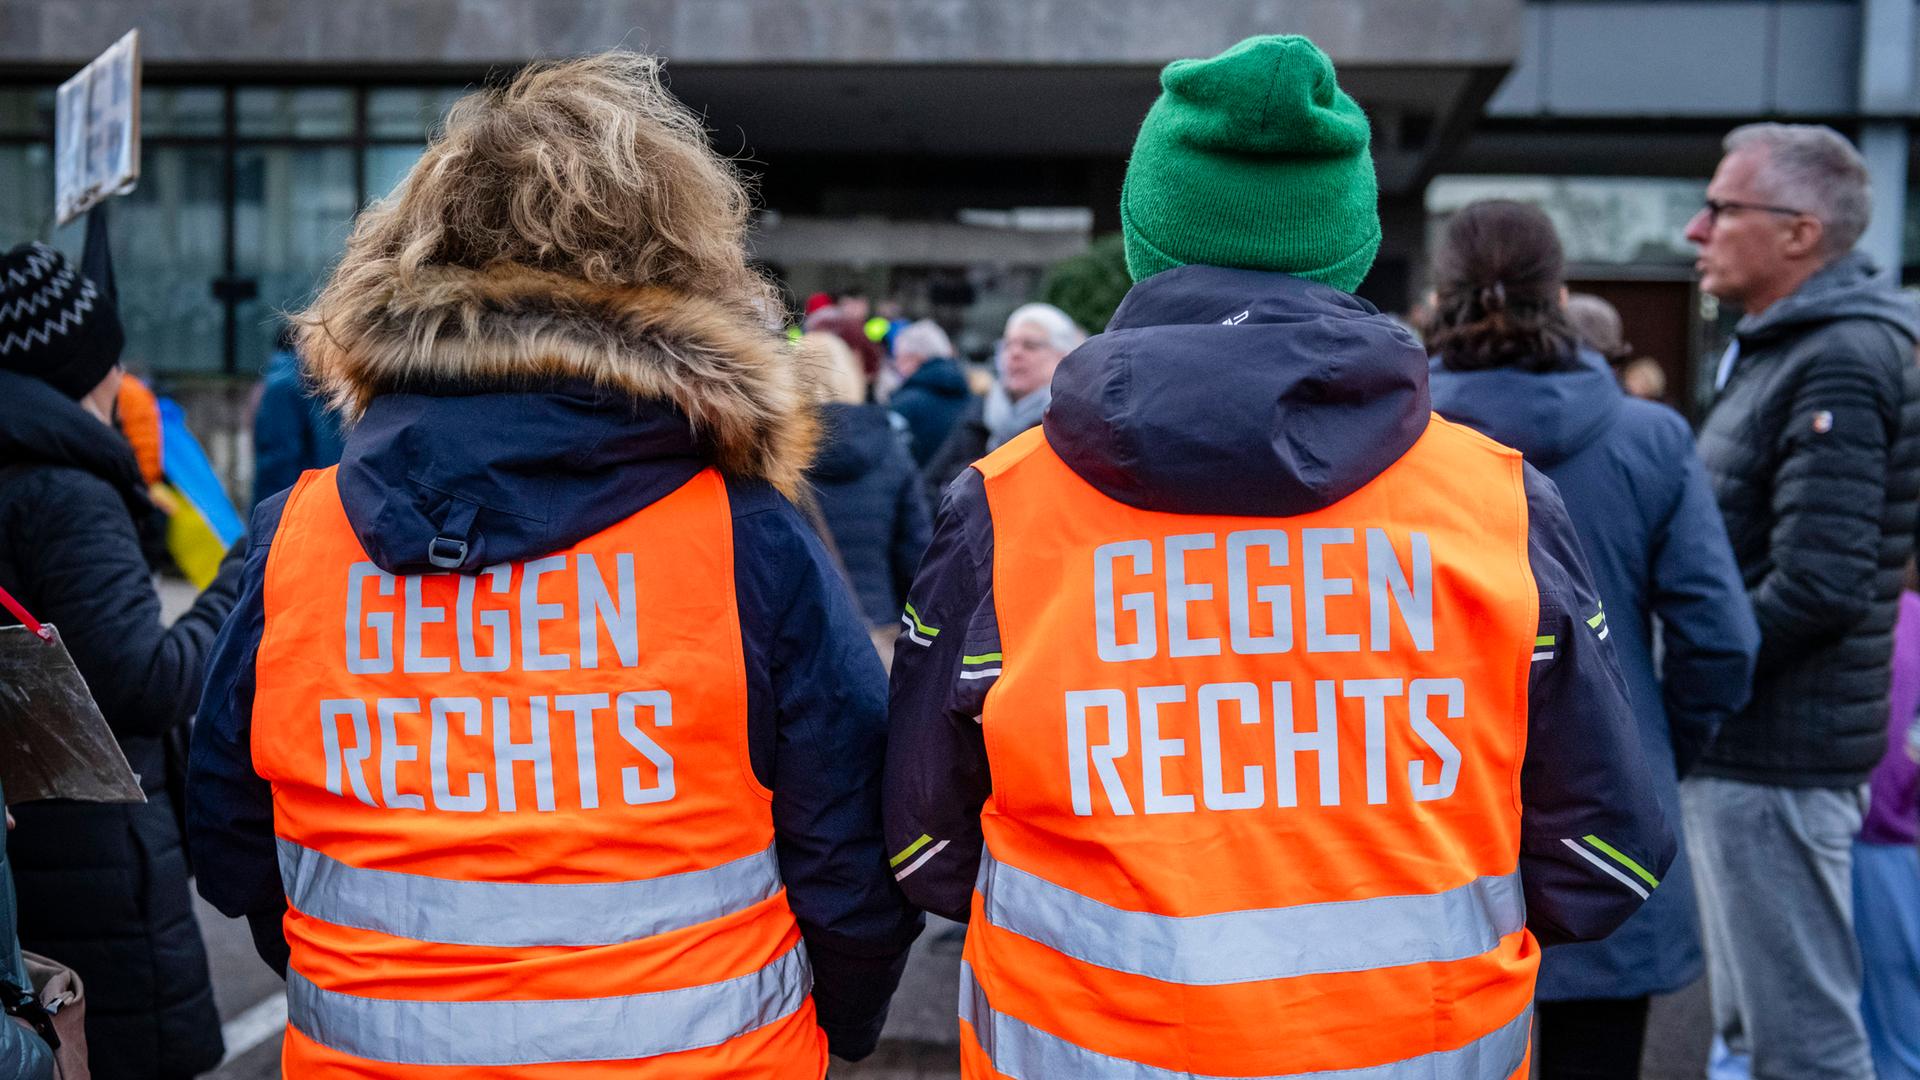 Teilnehmer einer Demonstration tragen orange Westen mit der Aufschrift "Gegen rechts"